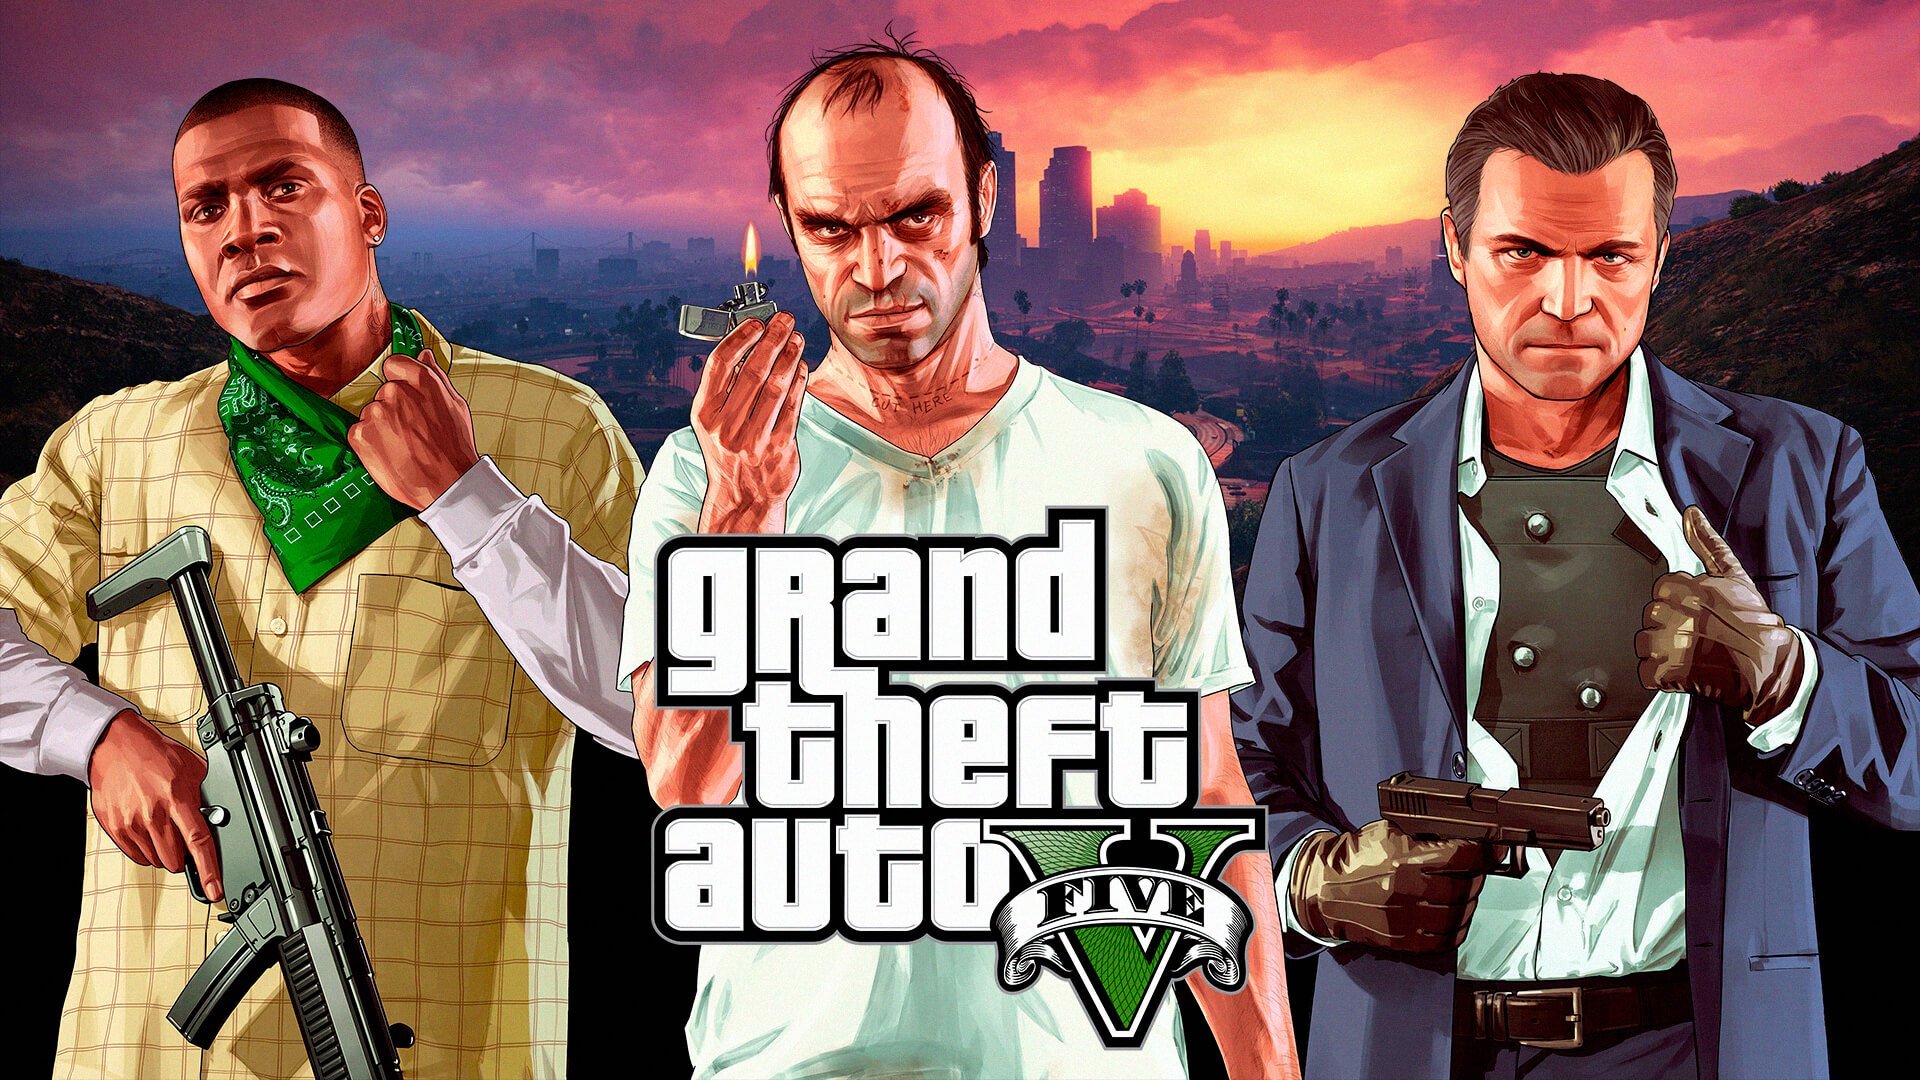 A história resumida de Grand Theft Auto V (GTA V) para relembrar - Mais Play